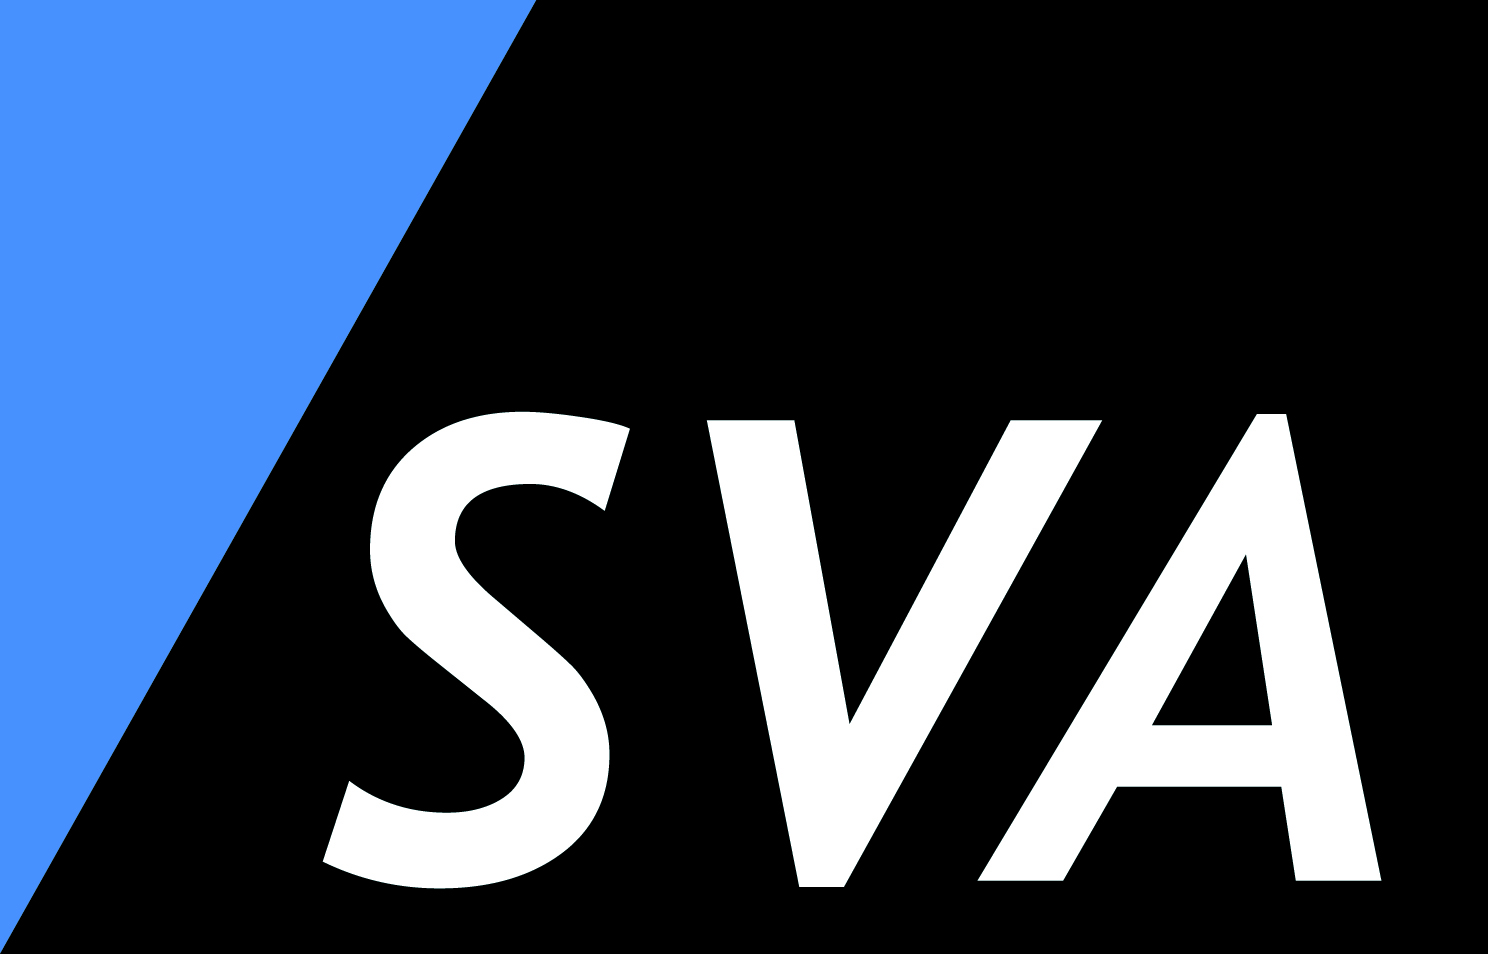 SVA GmbH